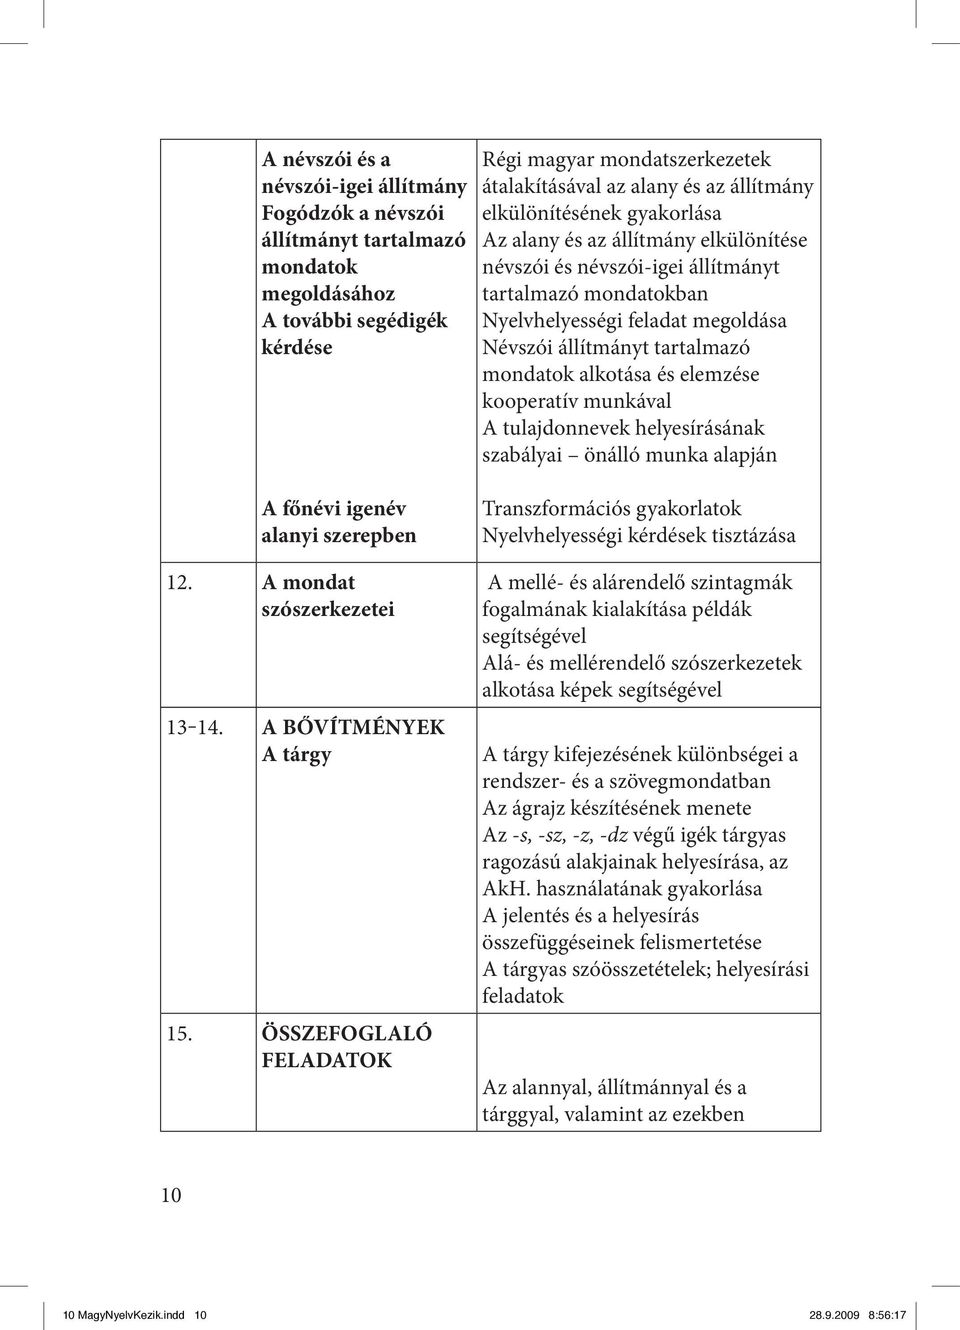 ÖSSZEFOGLALÓ FELADATOK Régi magyar mondatszerkezetek átalakításával az alany és az állítmány elkülönítésének gyakorlása Az alany és az állítmány névszói és névszói-igei állítmányt tartalmazó